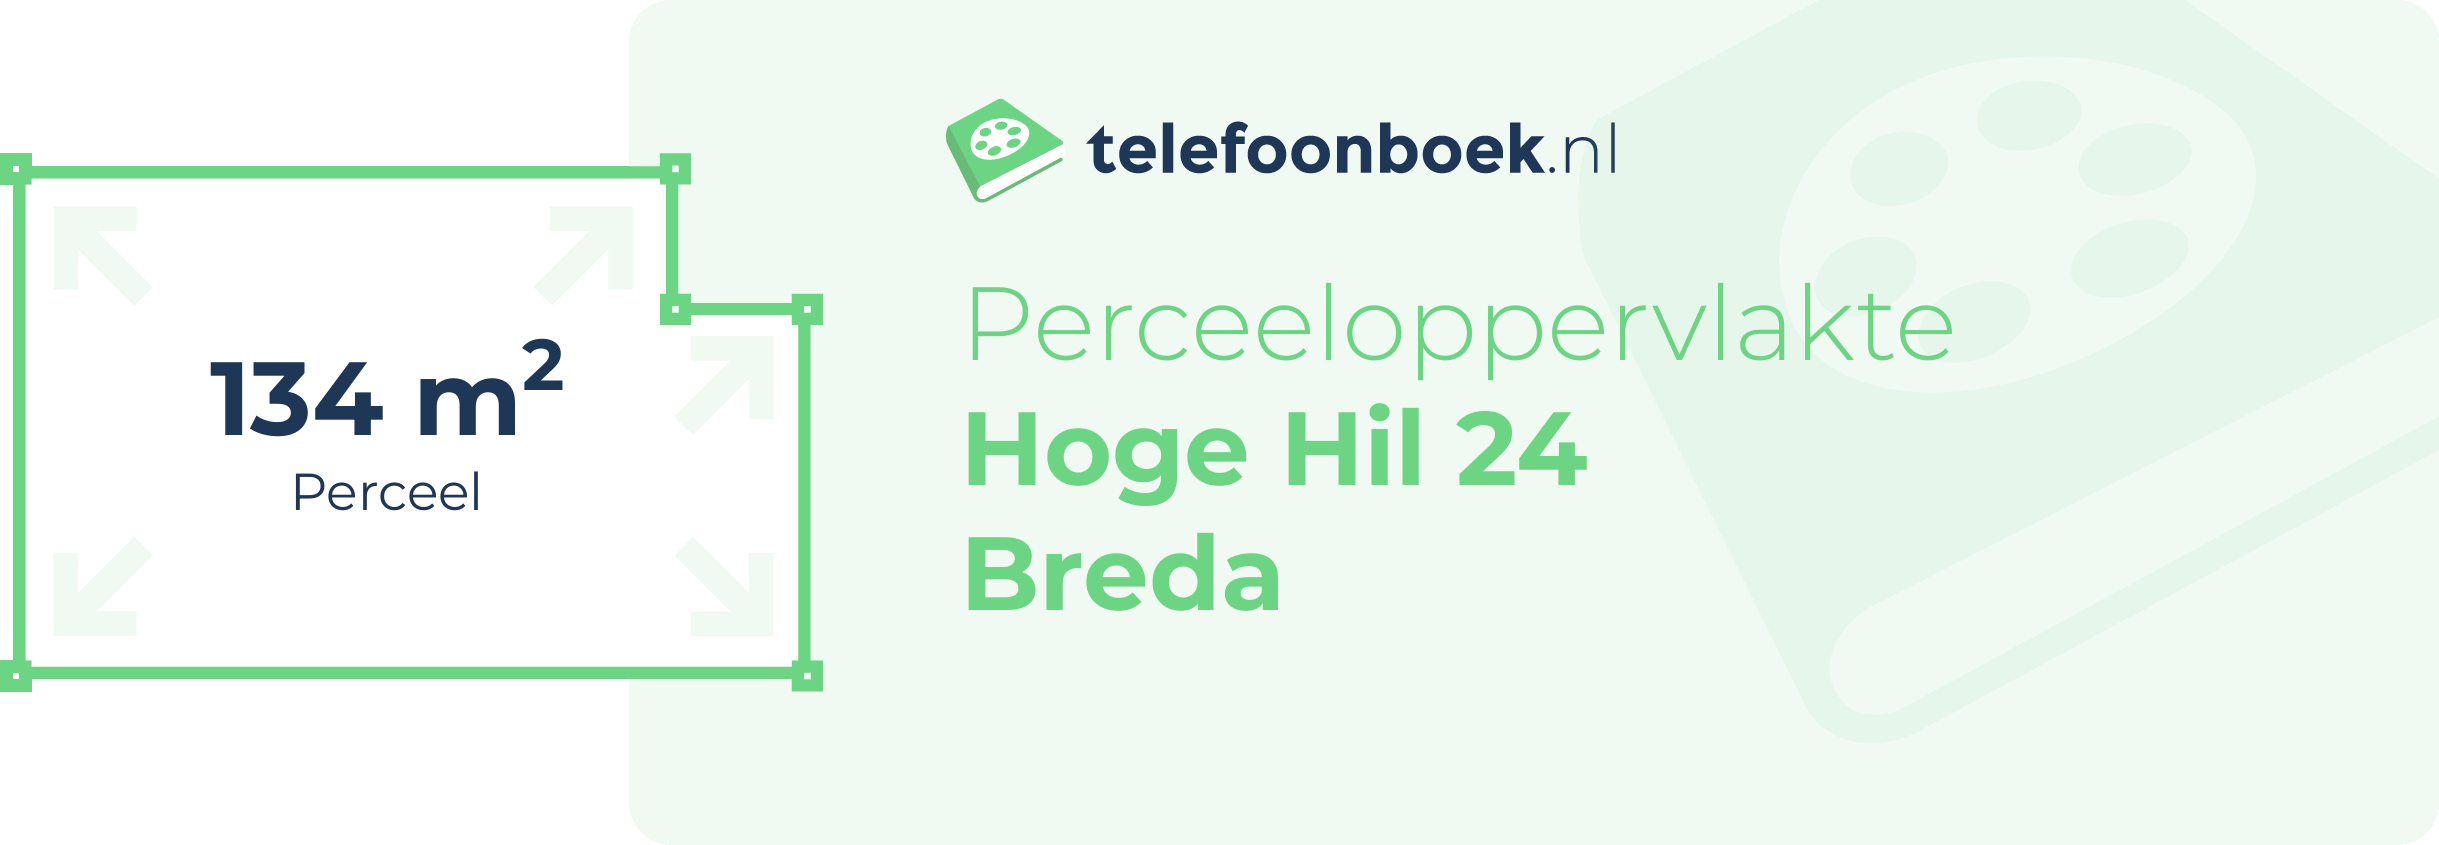 Perceeloppervlakte Hoge Hil 24 Breda